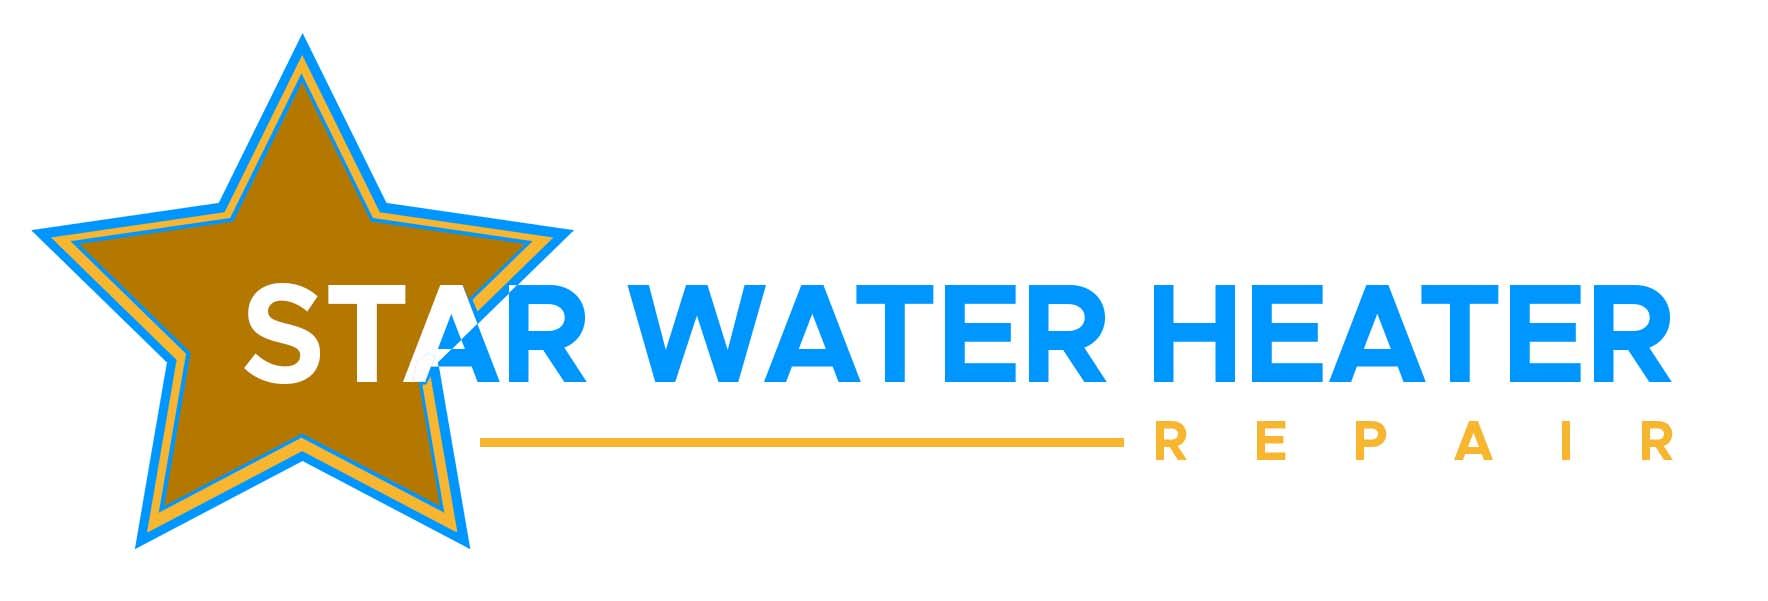 Star water heater repair logo 2